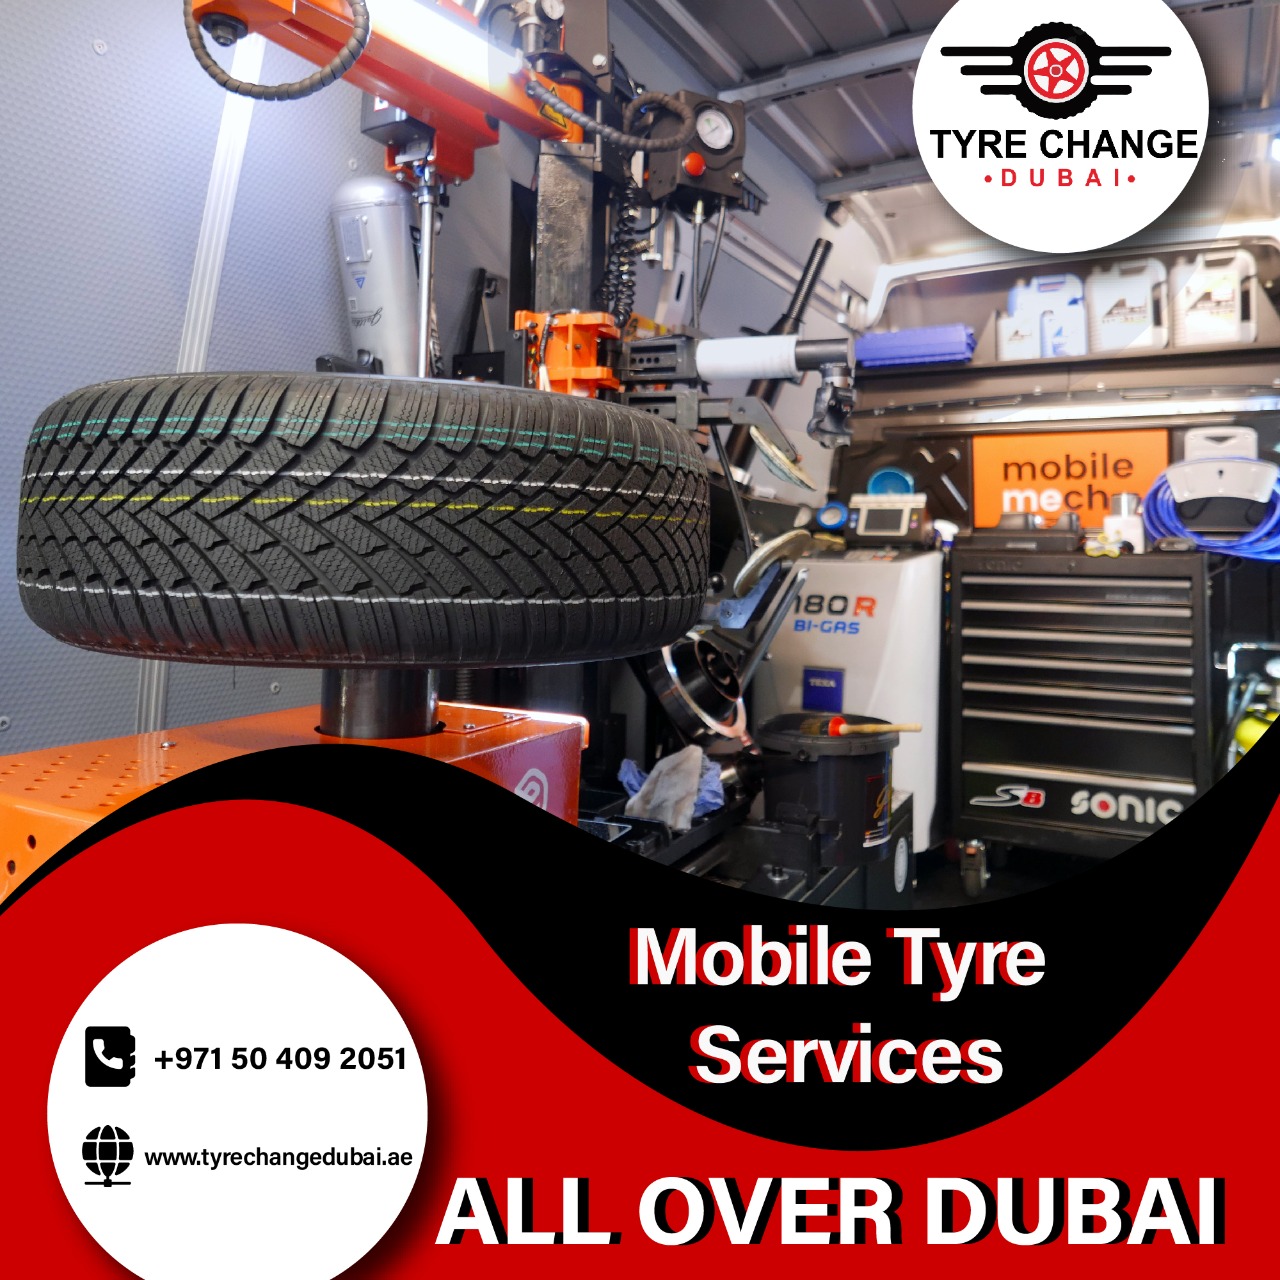 A
Mobile Tyre
+971 50 409 2051 Servi ces

200
EBB \ww.tyrechangedubai.ae

h ALL OVER DUBAI